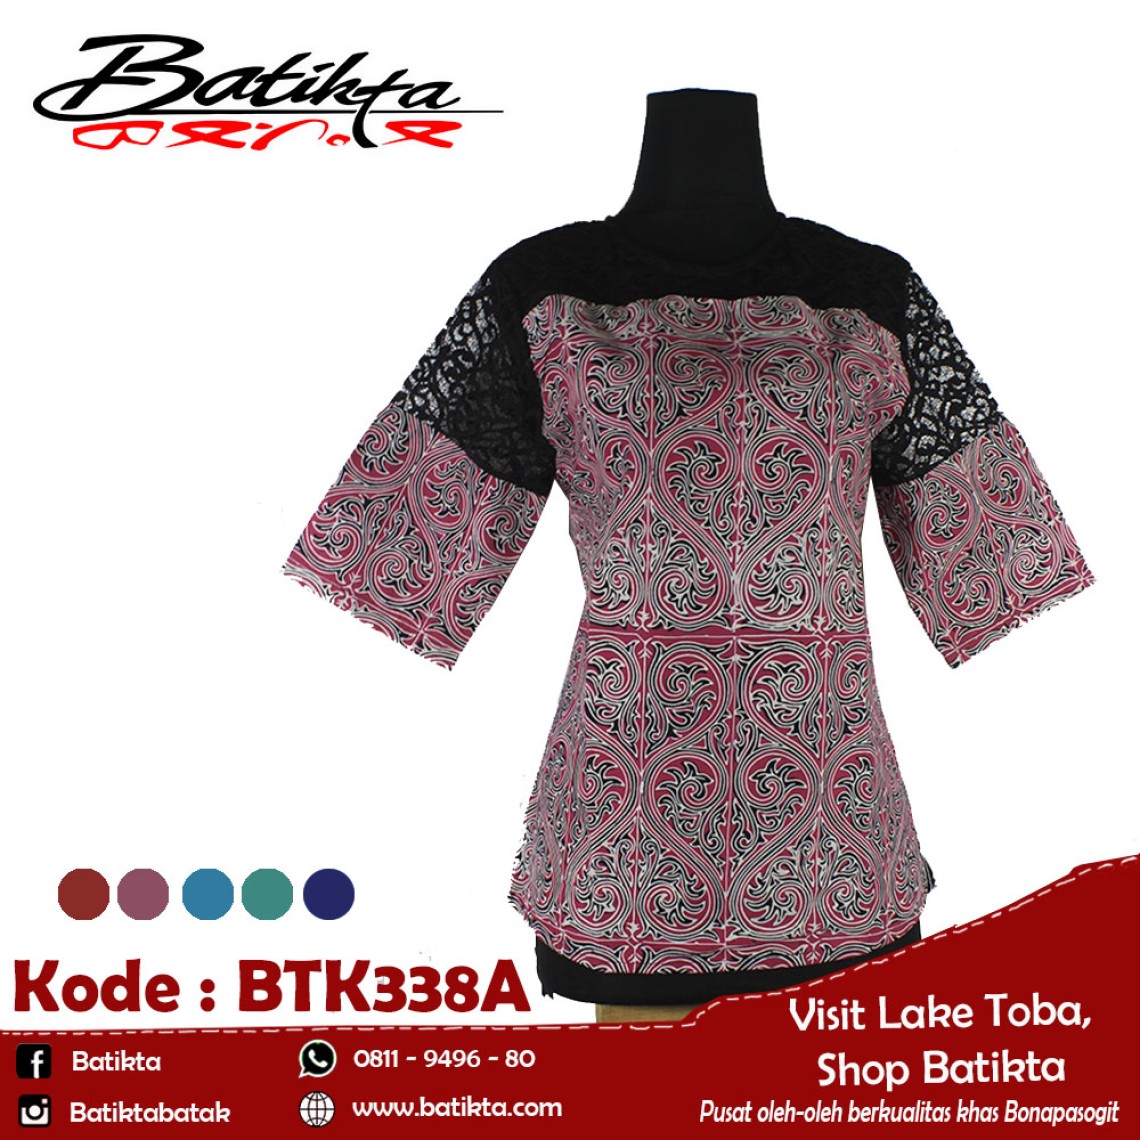 BTK338A Blus Batik Motif Gorga Warna Pink Putih Hitam profile picture